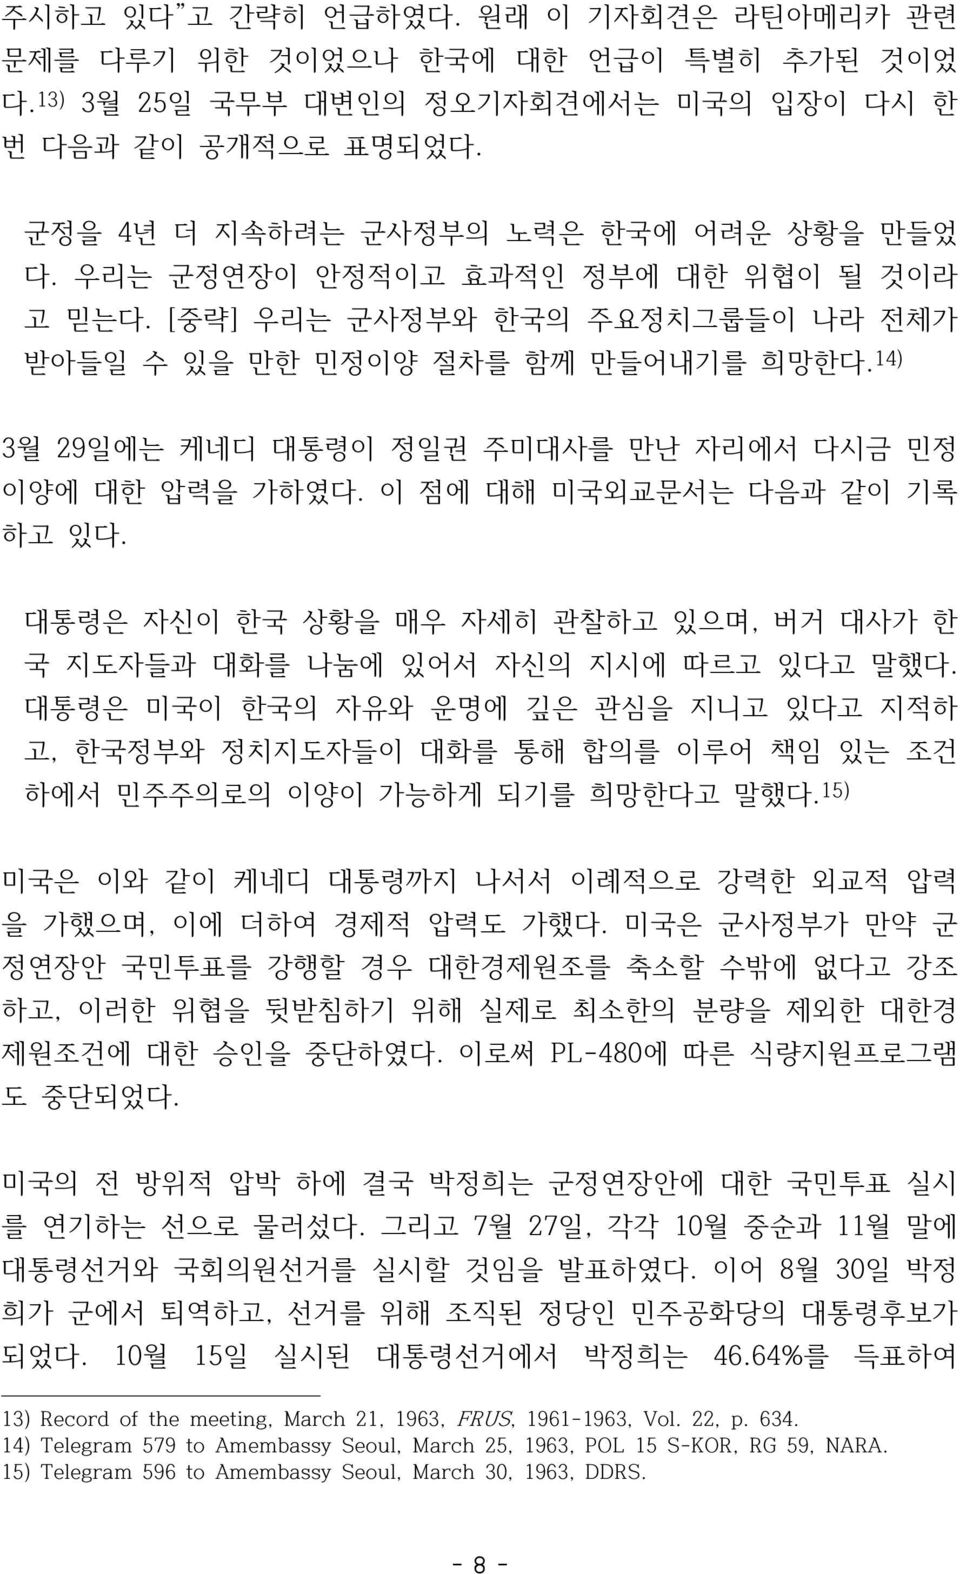 이 점에 대해 미국외교문서는 다음과 같이 기록 하고 있다. 대통령은 자신이 한국 상황을 매우 자세히 관찰하고 있으며, 버거 대사가 한 국 지도자들과 대화를 나눔에 있어서 자신의 지시에 따르고 있다고 말했다.